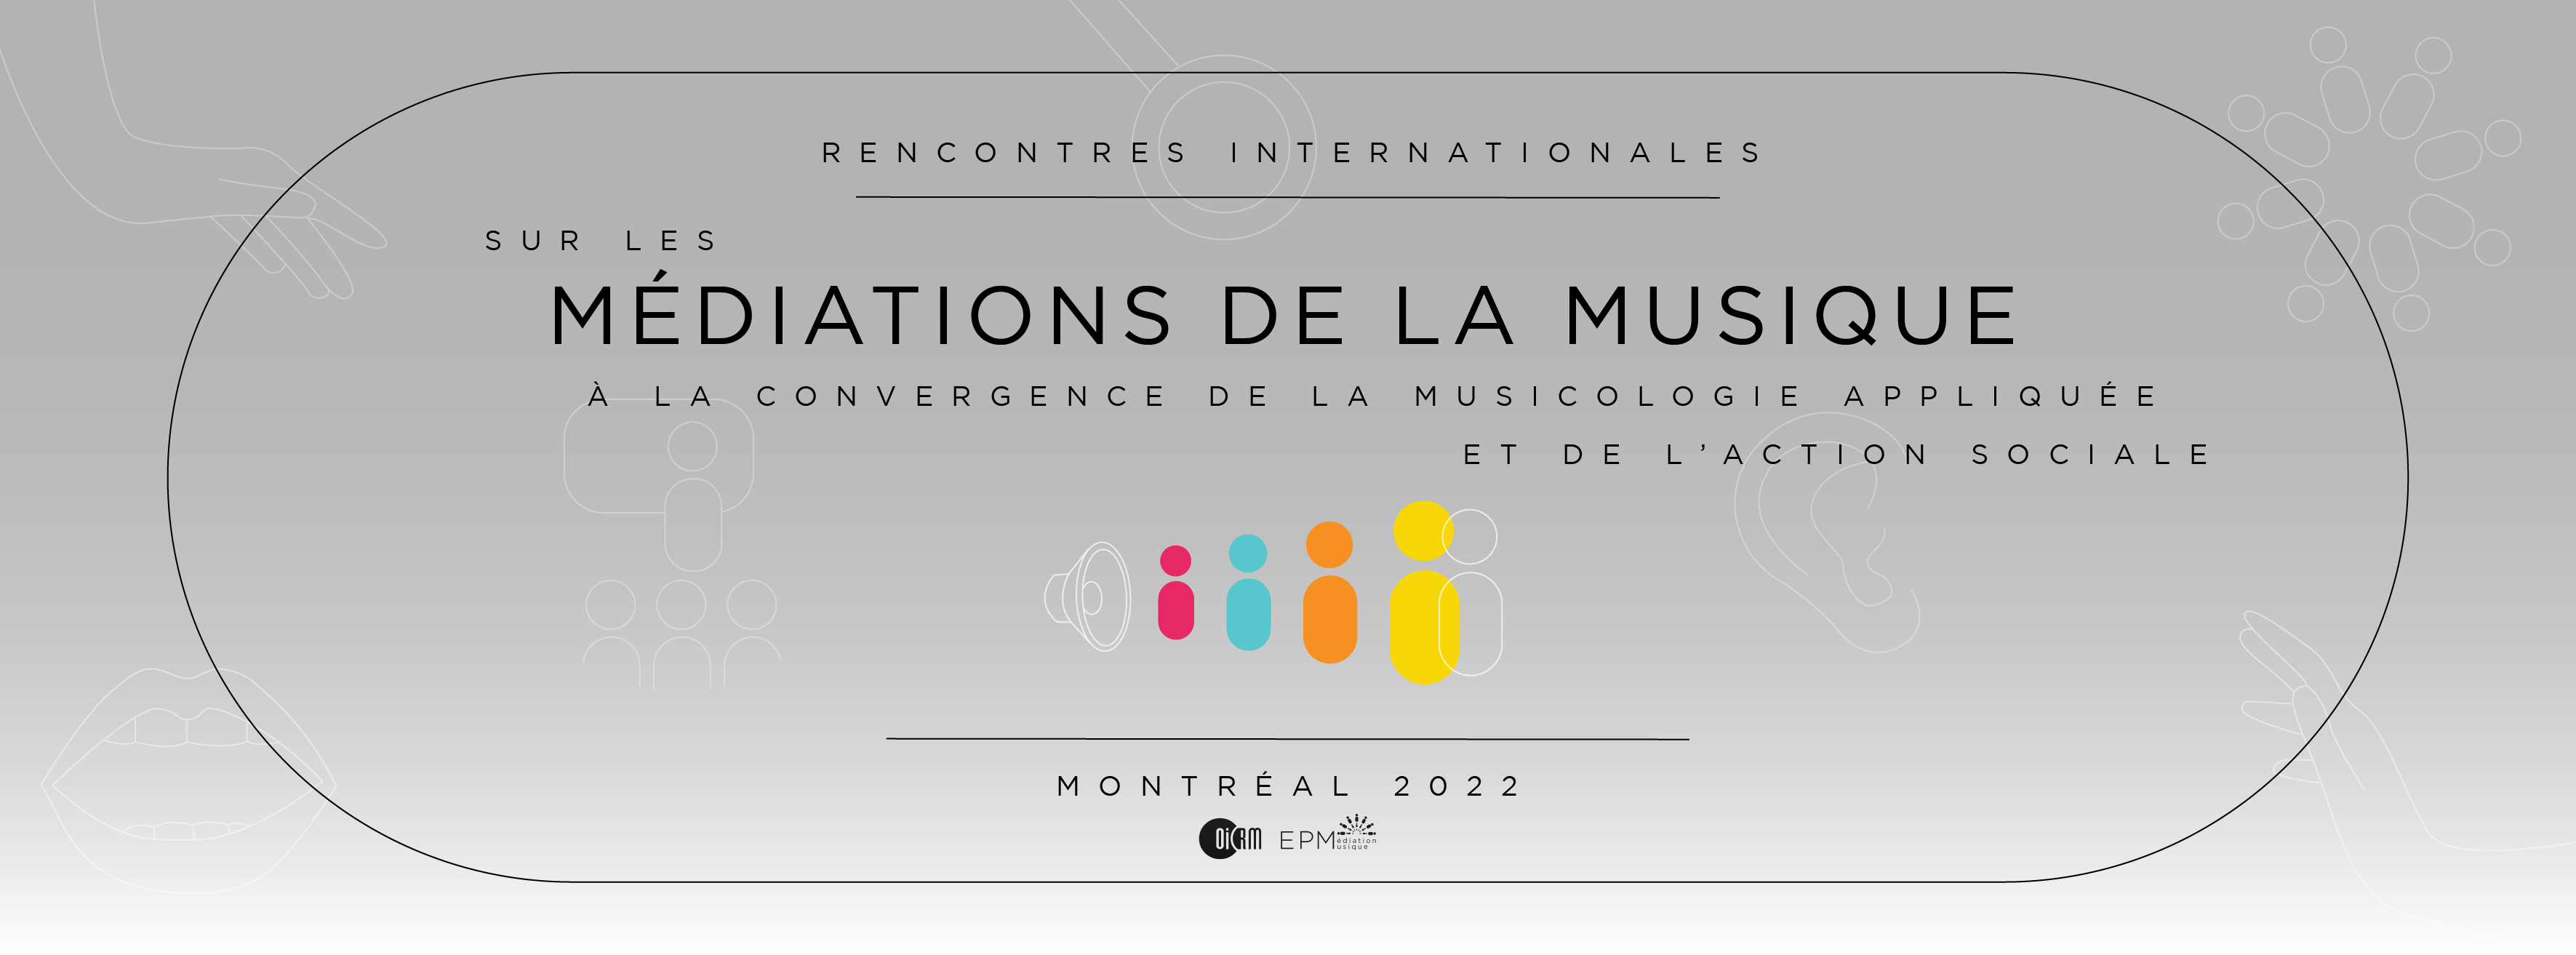 Rencontres internationales sur les médiations de la musique : de la musicologie appliquée à l'action sociale